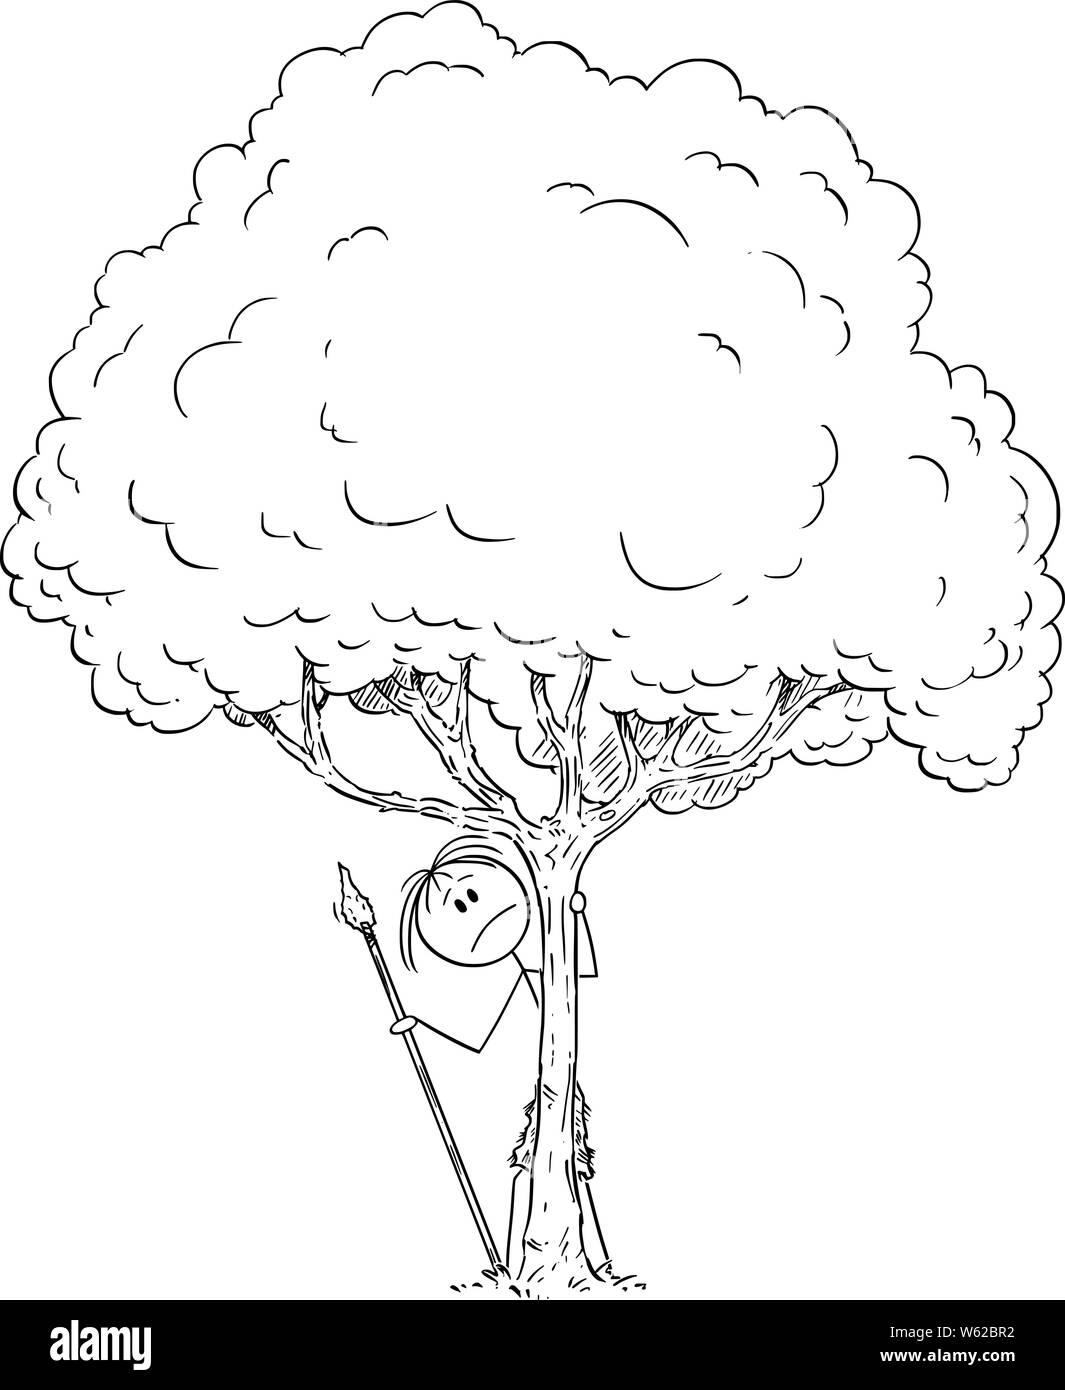 Vektor cartoon Strichmännchen Zeichnen konzeptionelle Darstellung der ängstlich oder besorgt oder Angst oder neugierig native oder prähistorischen Menschen versteckt sich hinter Baum. Stock Vektor